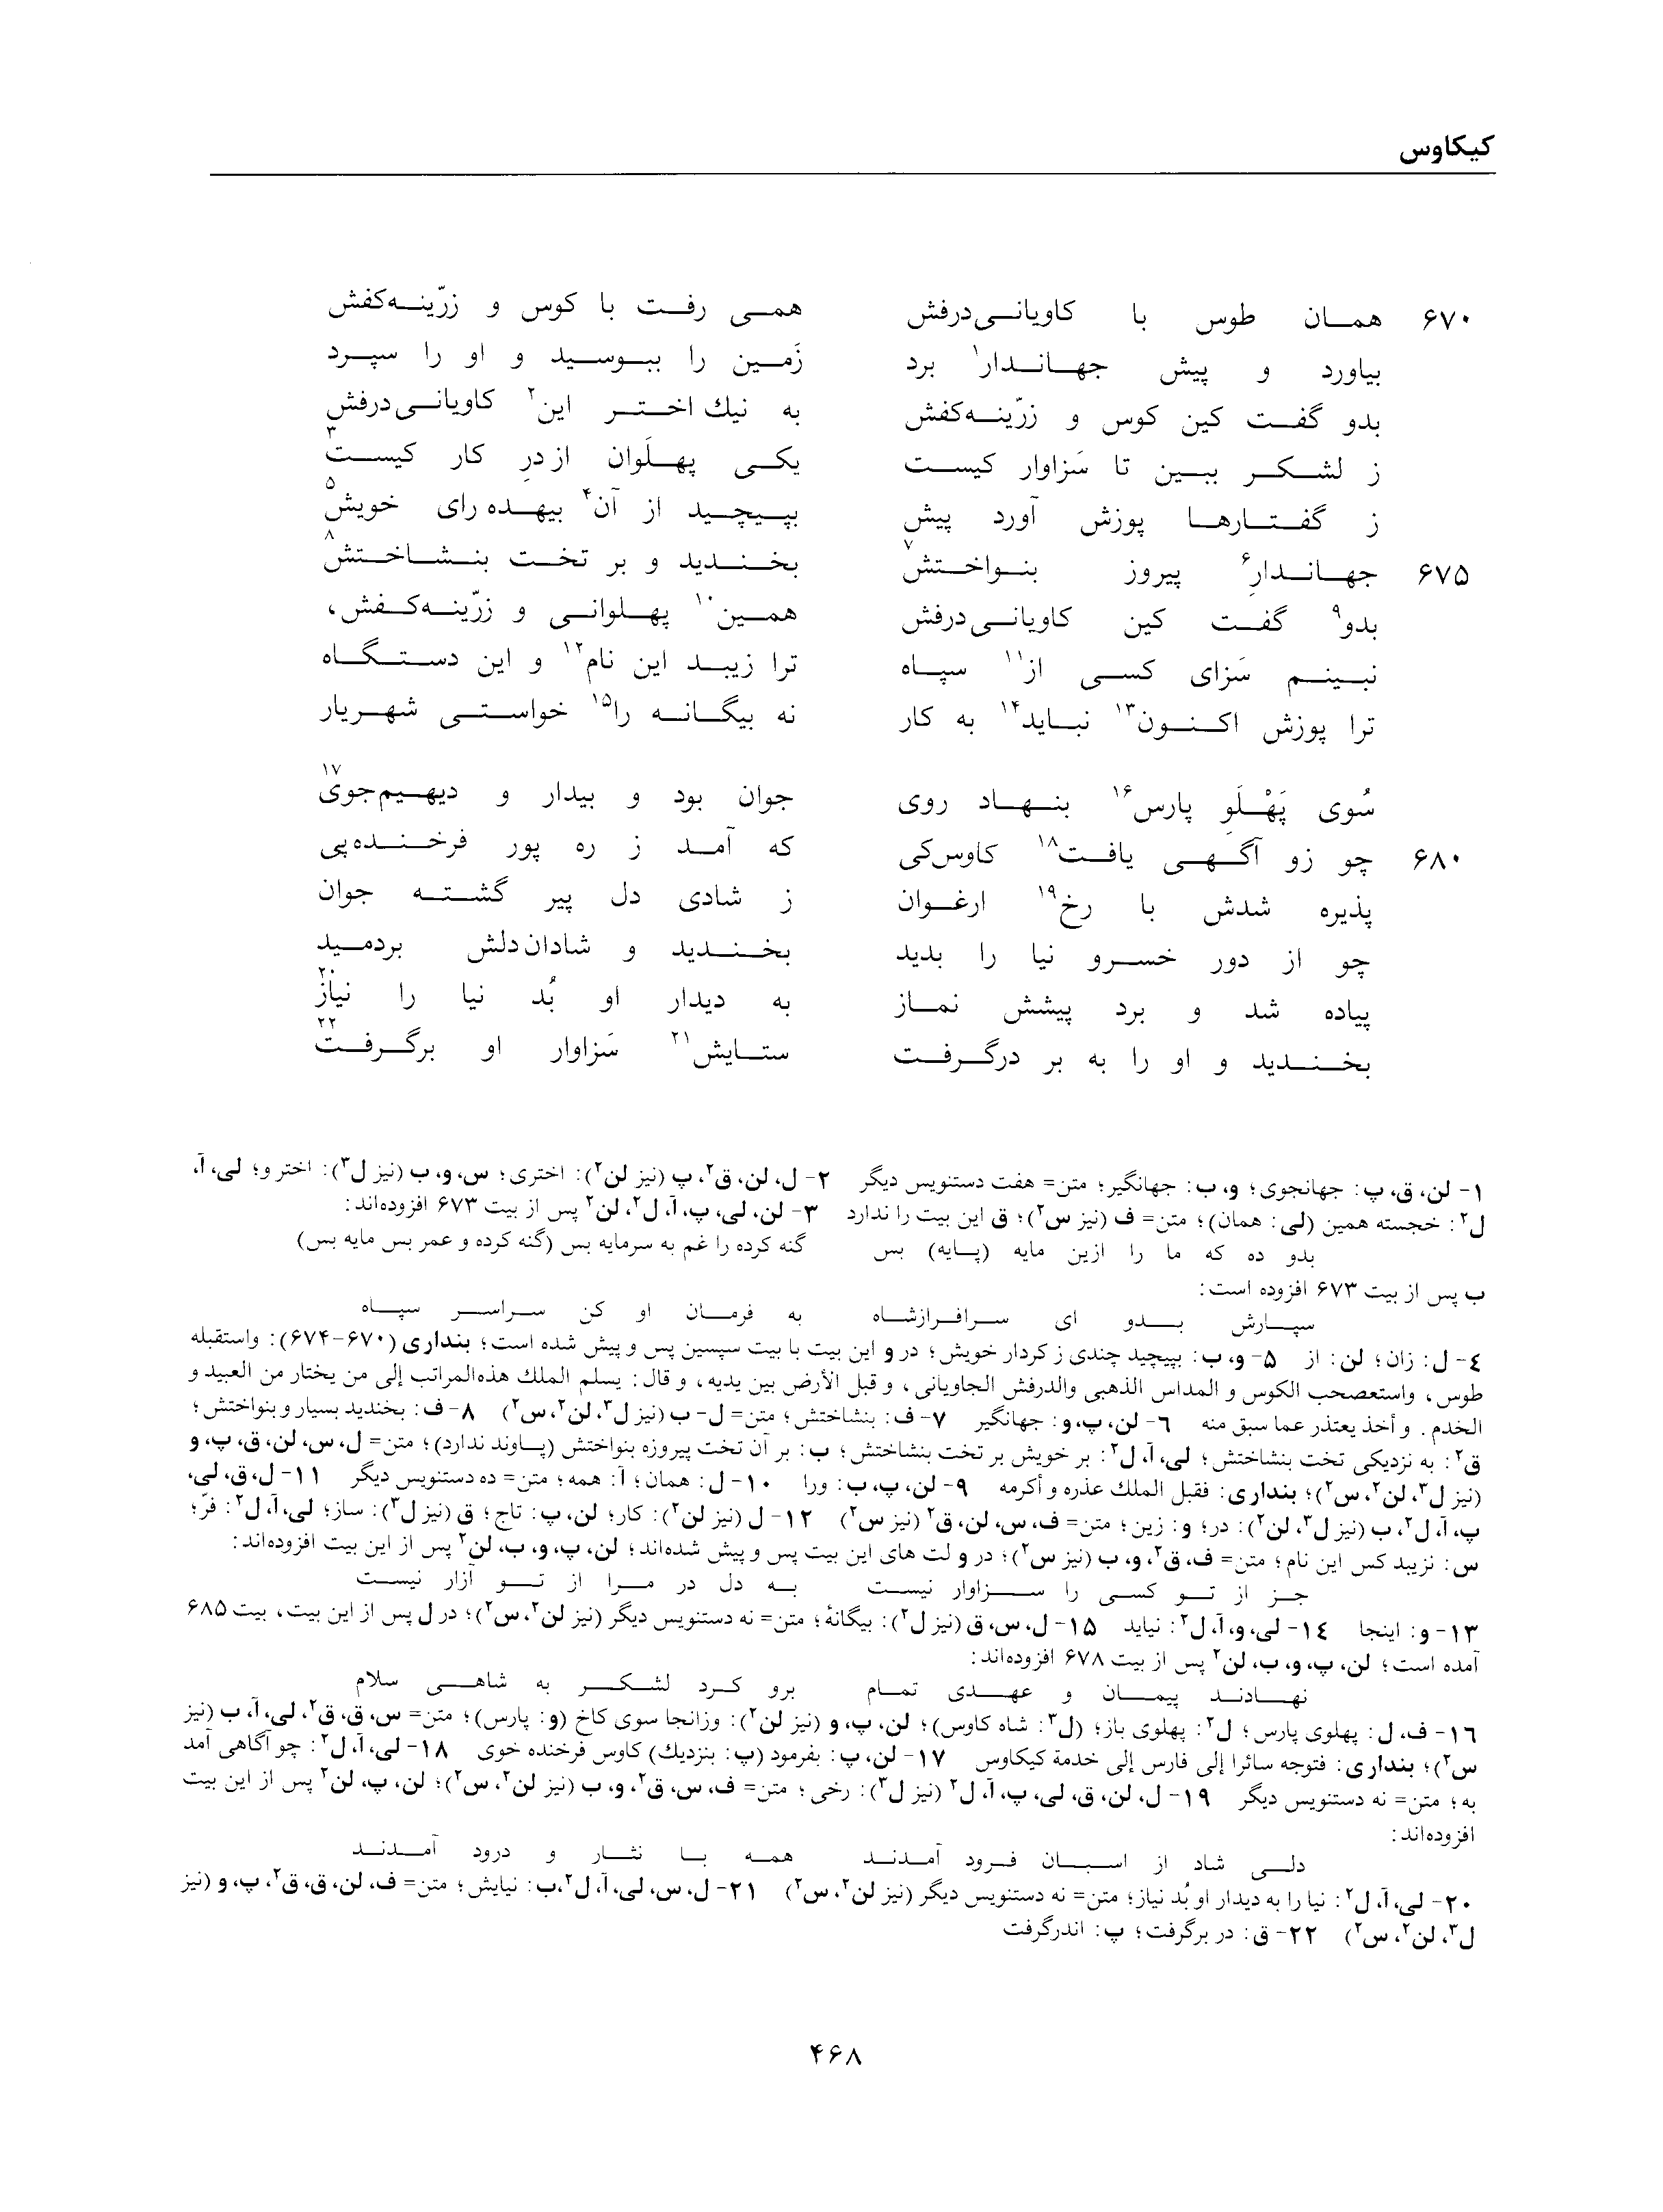 vol. 2, p. 468